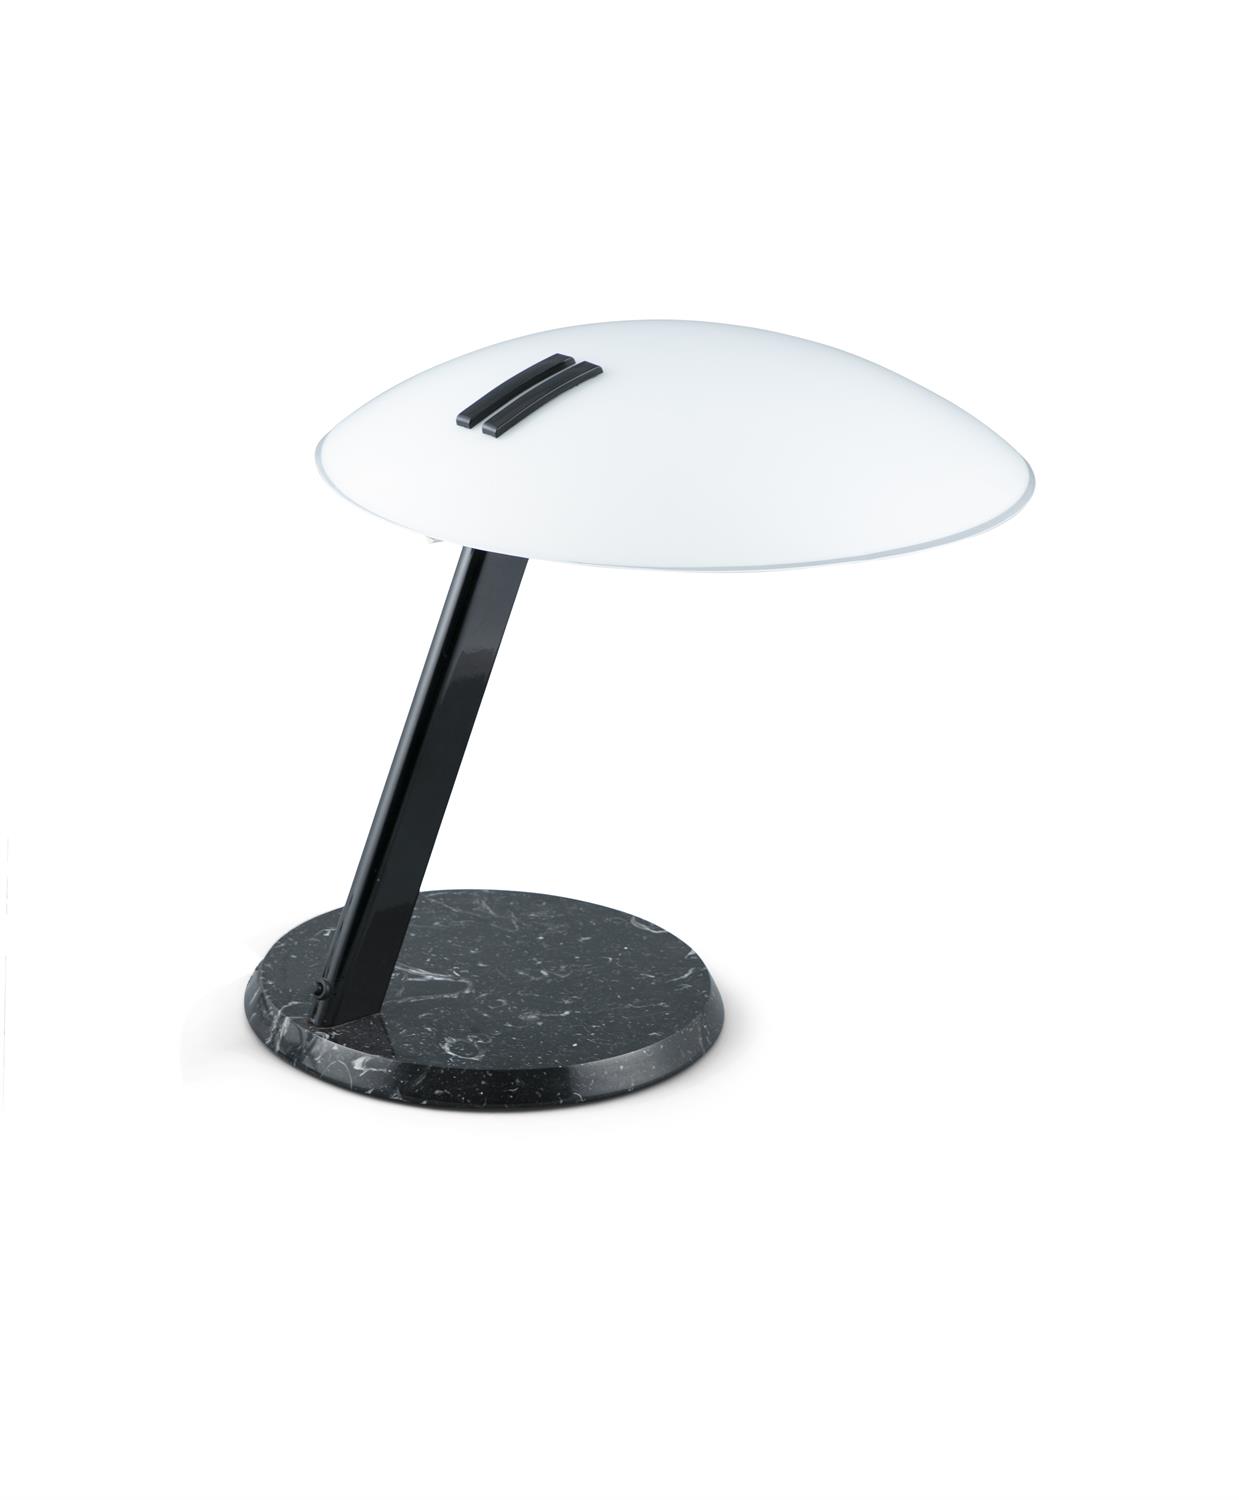 BRUNO GECCHELIN (b. 1939) The Model 'Perla' table lamp by Bruno Gecchelin, for Oluce, c.1980, - Image 2 of 5